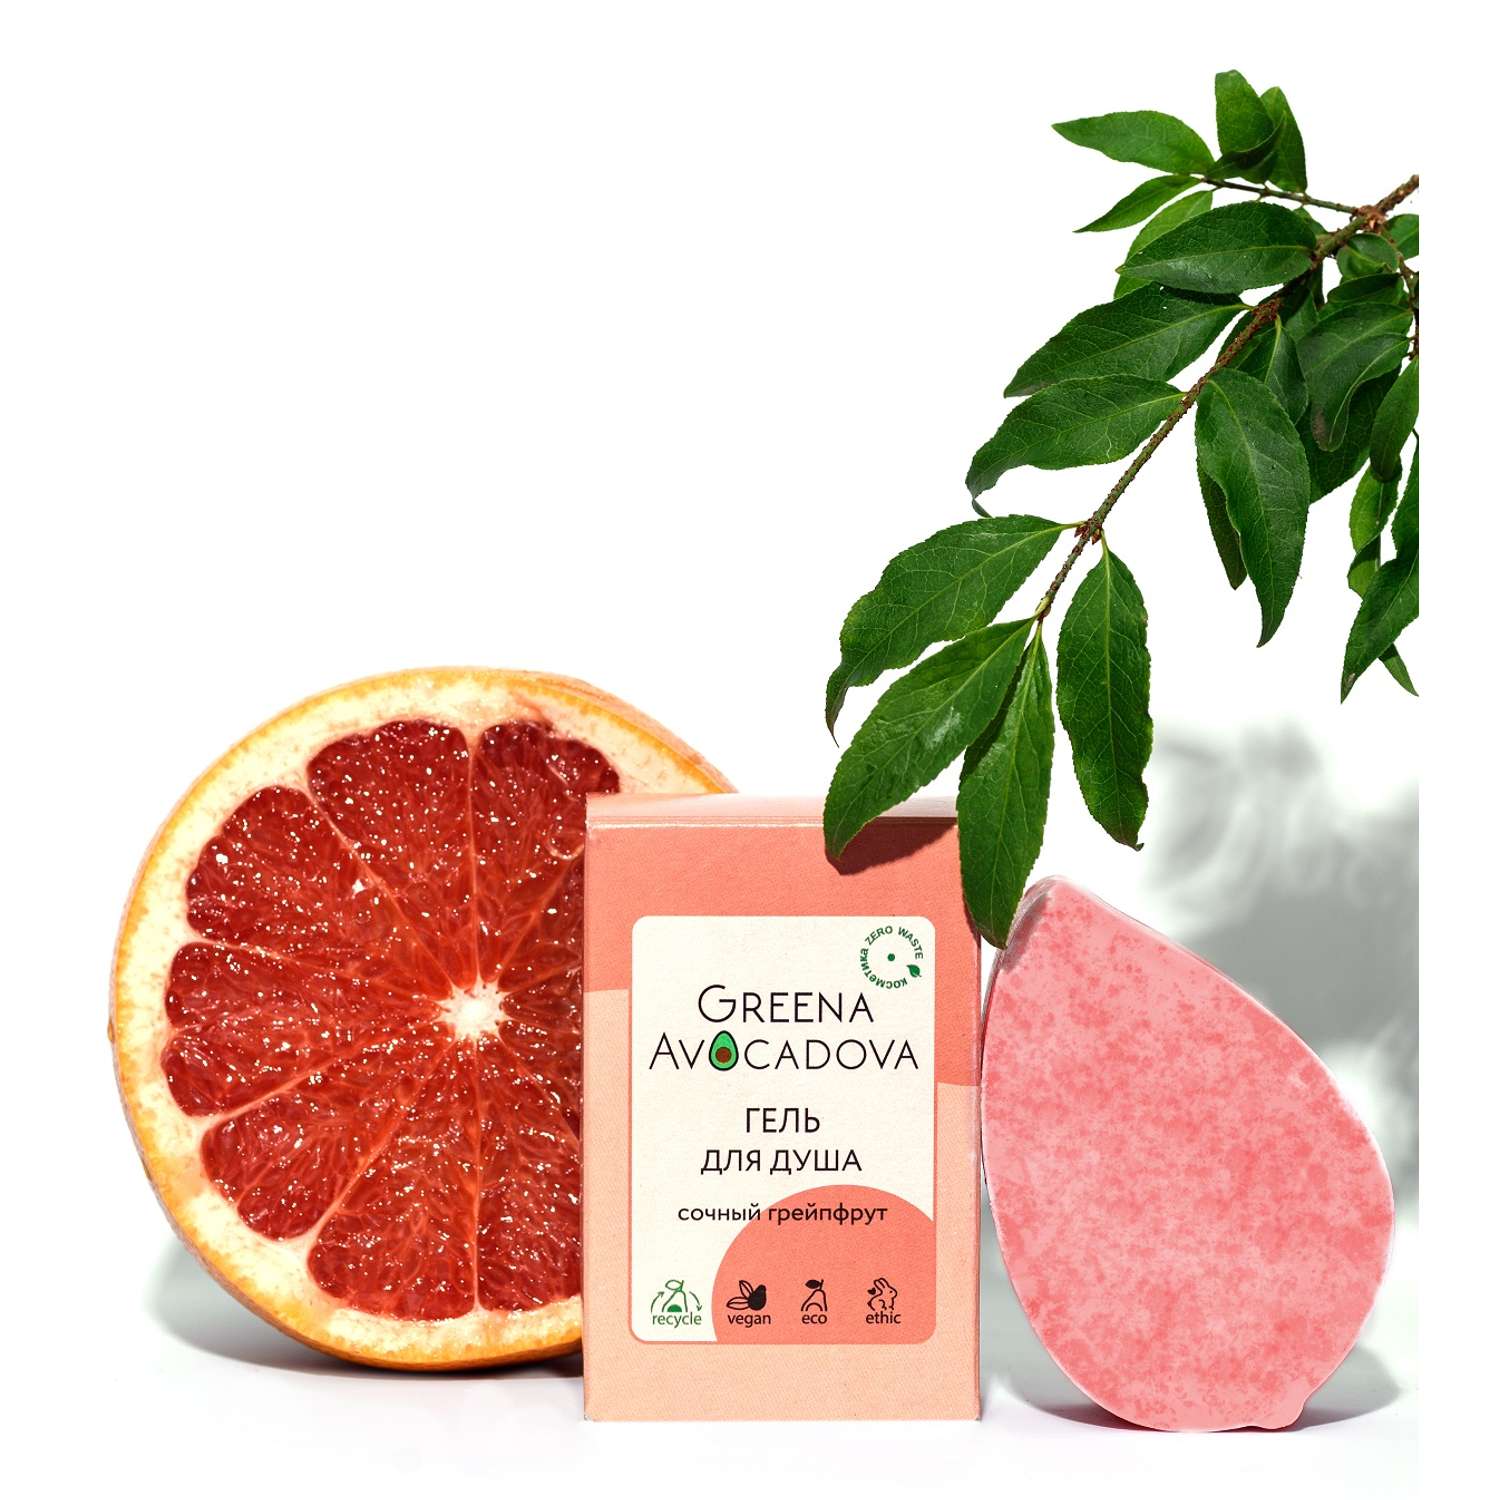 Твердый гель для душа Greena Avocadova Сочный грейпфрут - фото 2